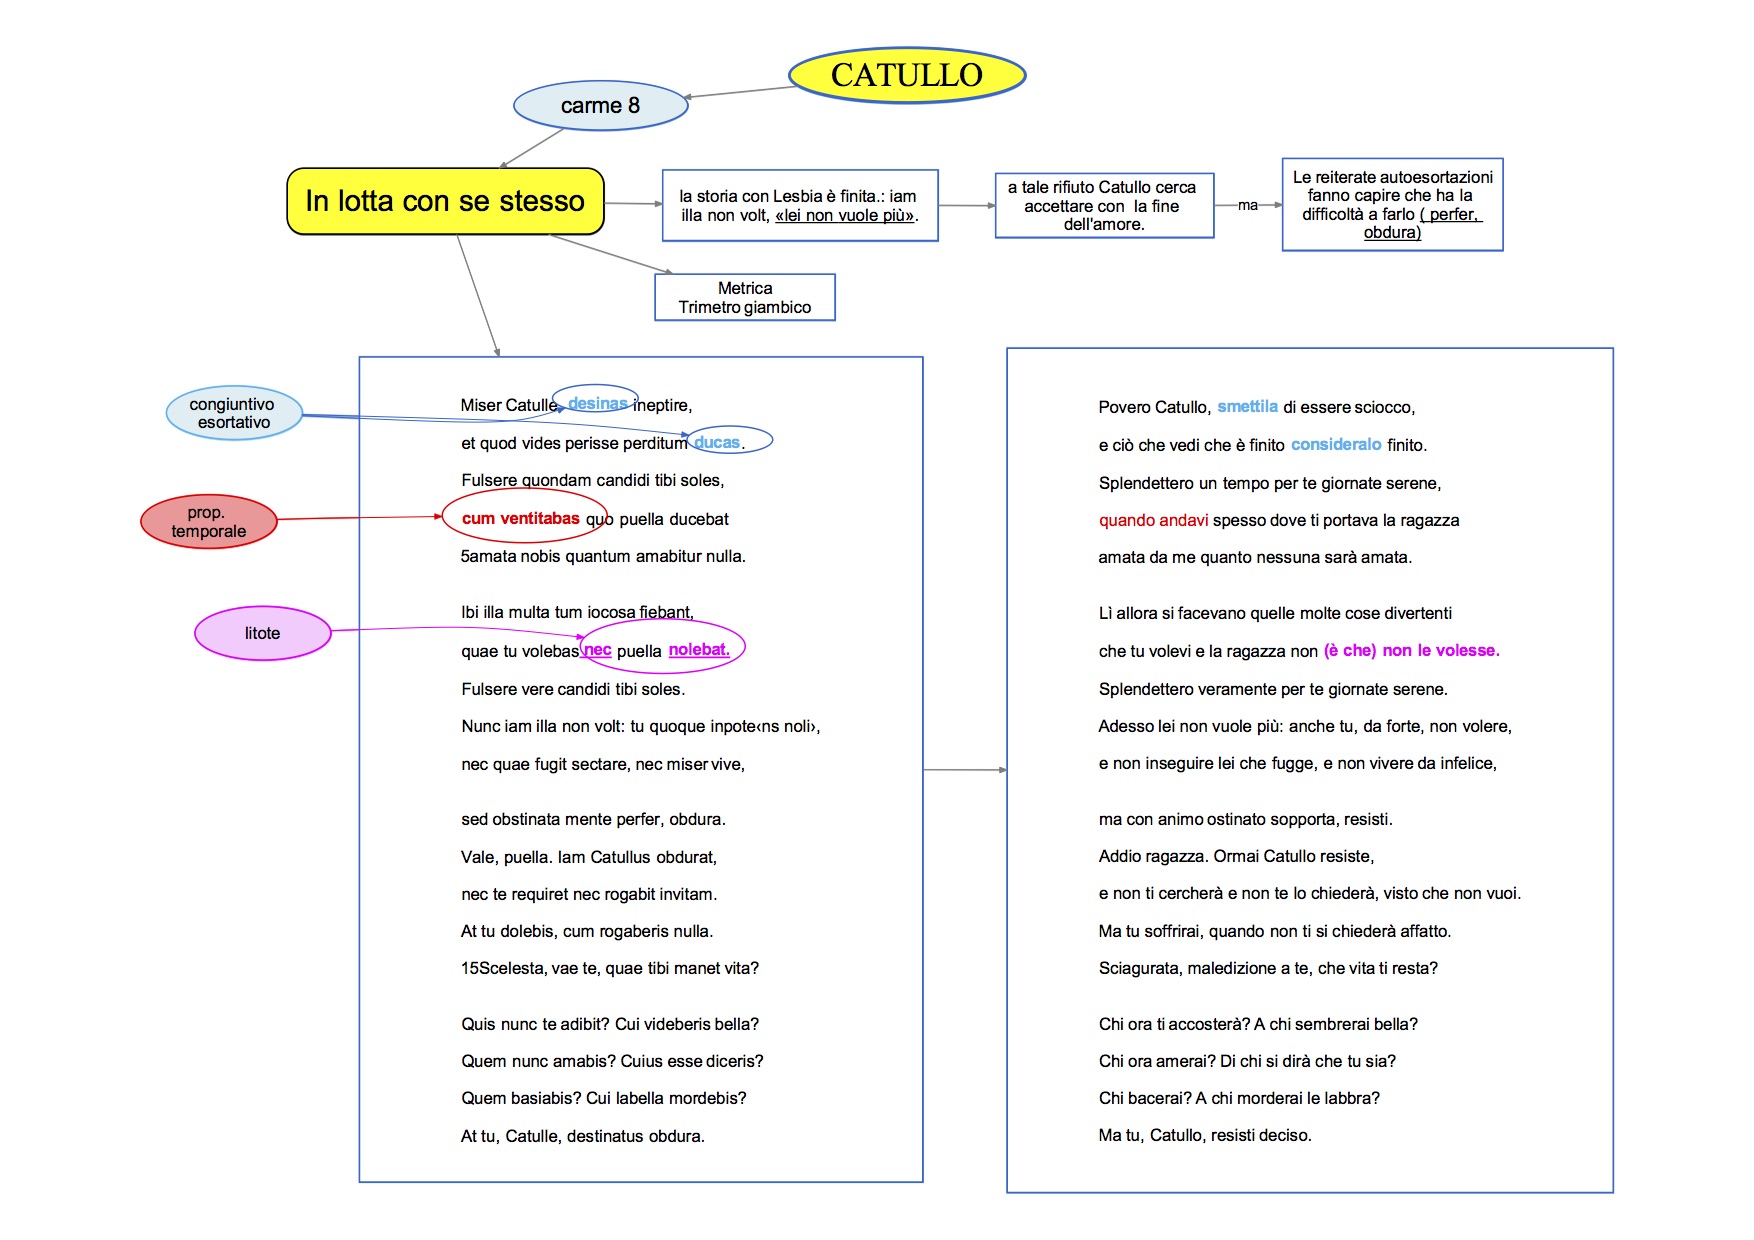 analisi figure retoriche versione Catullo carme 8